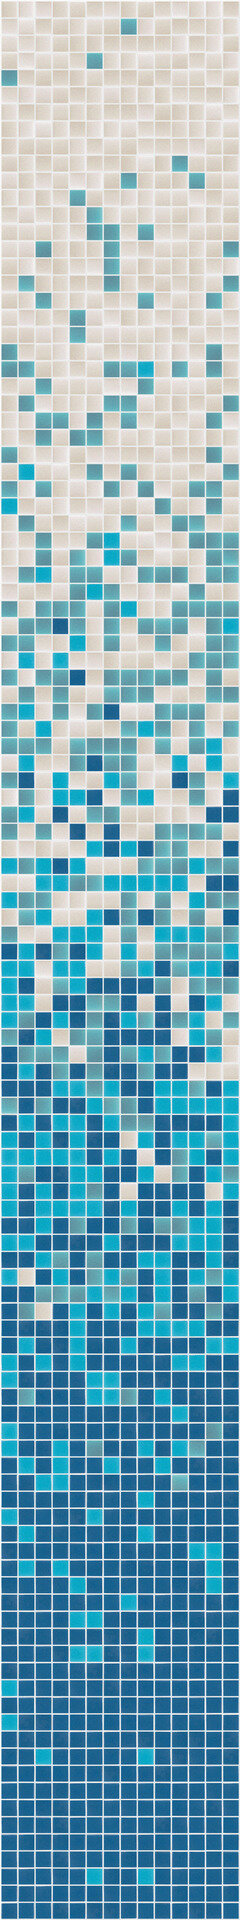 Мозаика облицовочная стеклянная Hisbalit Degradados Piscinas Cian Unicolor Non-slip 2,5*2,5 ( м2)